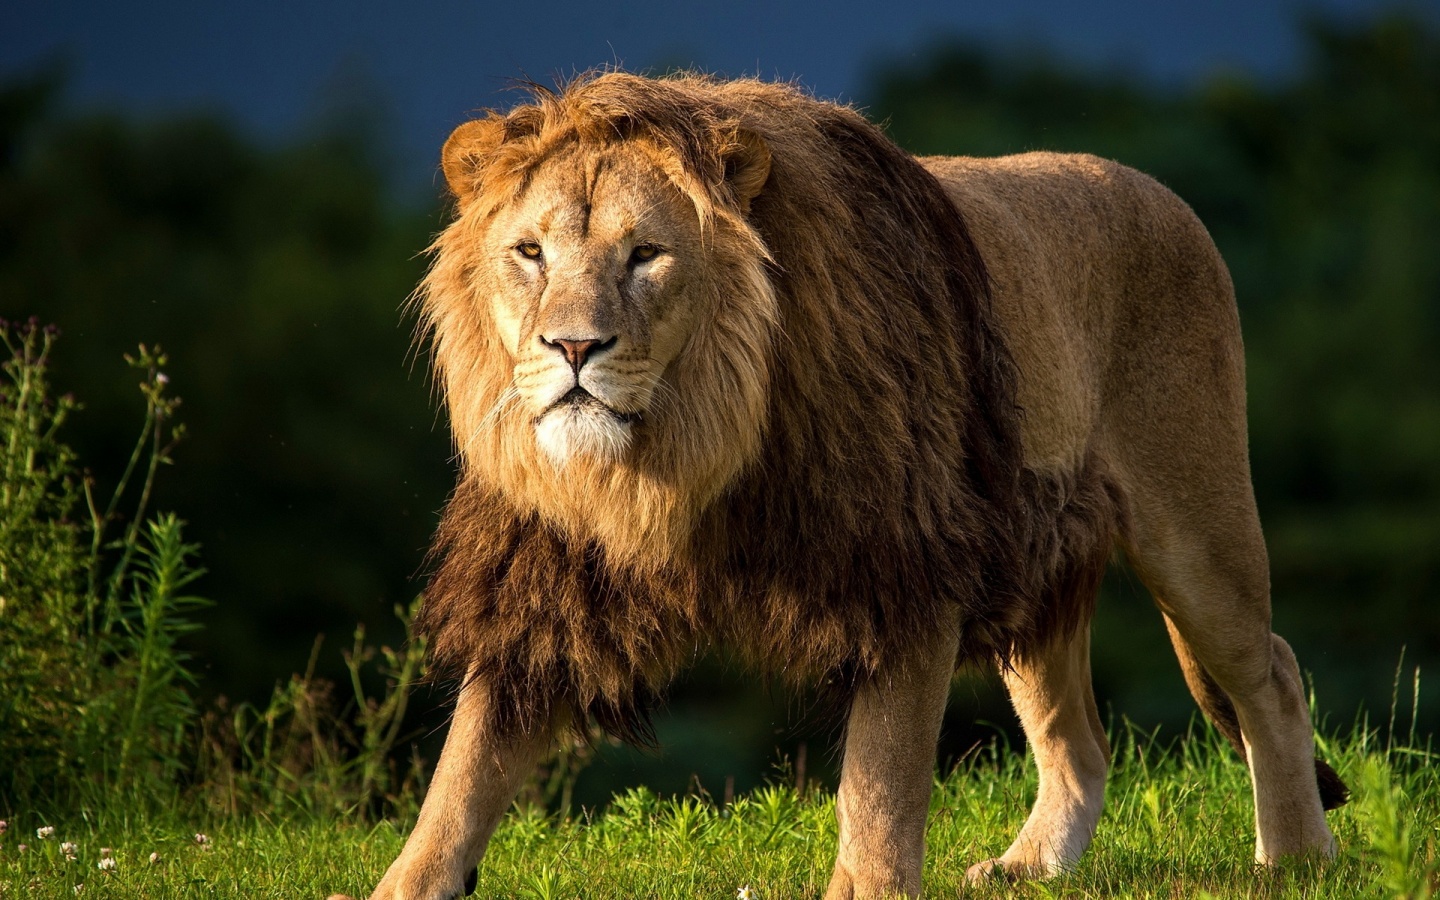 dangerous lion images photos download